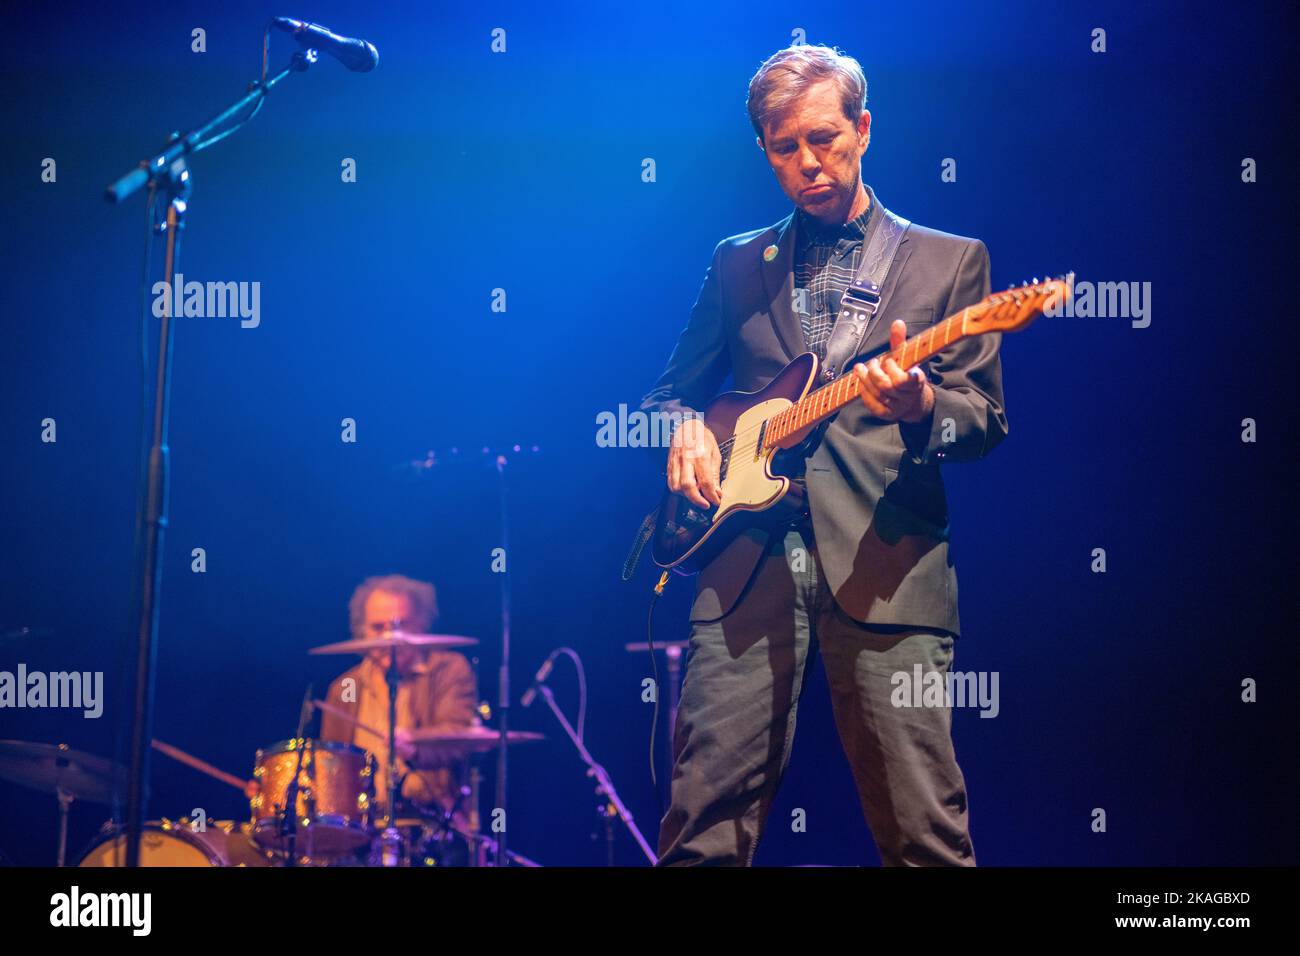 Londra, Regno Unito. Mercoledì 2 novembre, 2022. Bill Callahan si esibisce dal vivo sul palco presso la Roundhouse di Londra. Foto: Richard Gray/Alamy Live News Foto Stock